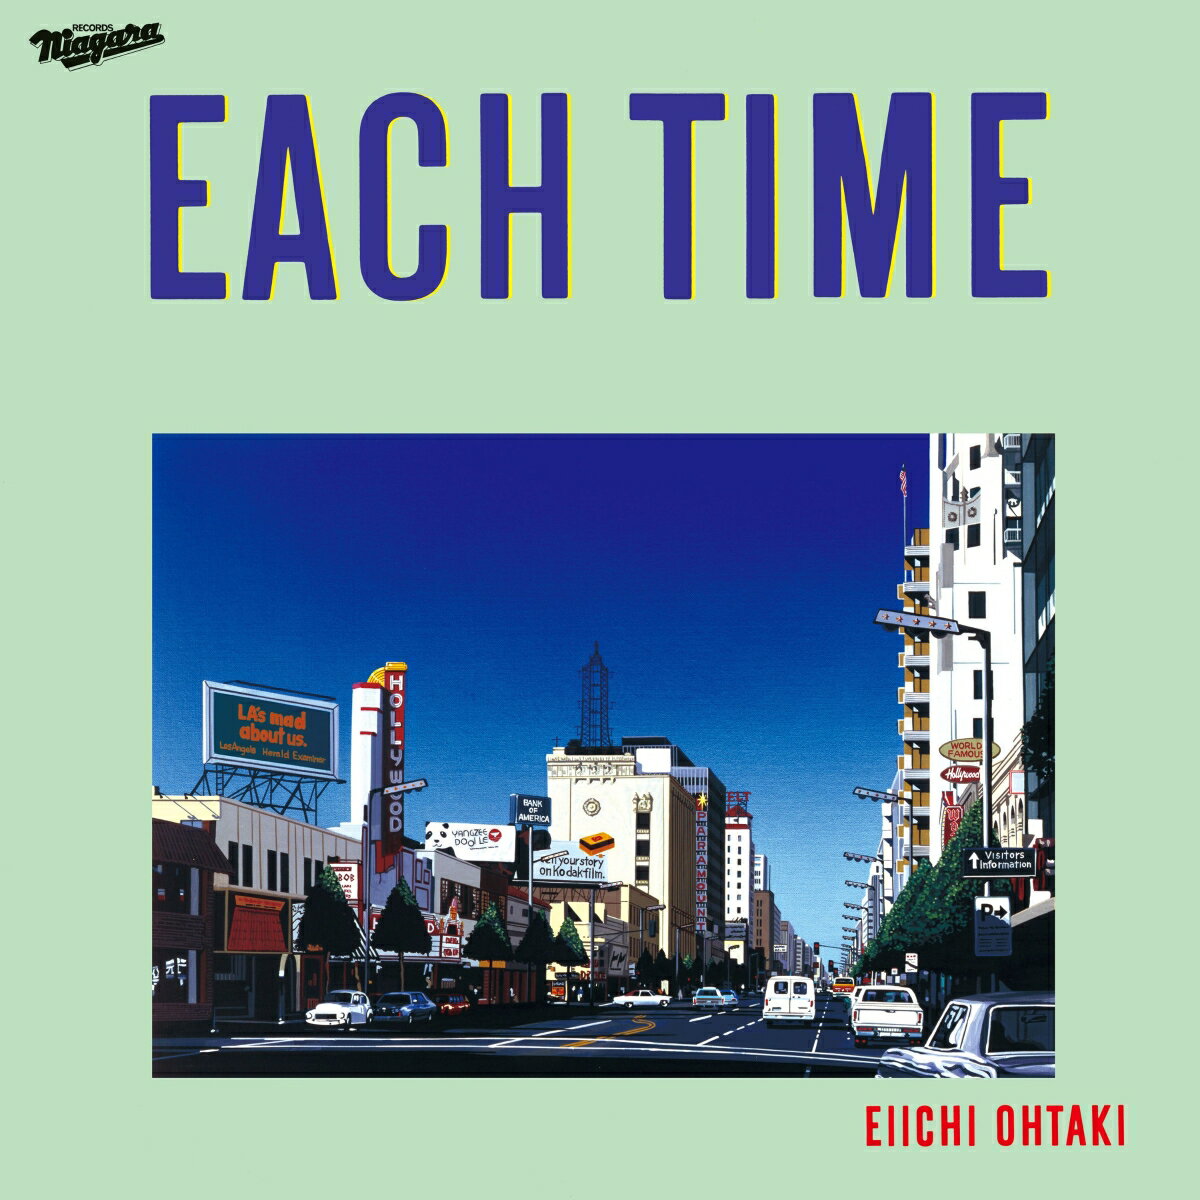 大滝詠一の名作アルバムが 40 周年記念盤としてリリース決定！！

日本ポップ界の巨人・大滝詠一の代表アルバム『EACH TIME』の発売 40 周年を記念して『EACH TIME 40th Anniversary Edition』が 2023年3月21日にリリースされることが決定！
『EACH TIME』は 1984年3月21日に発表された 6枚目のオリジナルアルバムで、スタジオ・フルアルバムとしては大滝生前最後の作品となります。
アーティストとしても作曲家としても大きな注目を集めていた時期に発売され、
オリコンアルバム・ウィークリーランキングでマイケル・ジャクソン『スリラー』を抑えて 1 位を獲得するなど大ヒットを記録。
その作品が 3種類のパッケージで 40年の時を経て蘇ります！

12インチ＋7インチレコードがセットになったアナログレコードも同時発売。
今作は[1984年 Original Mix]の 12 インチフルアルバムに、1985年にリリースされた 7 インチシングル「フィヨルドの少女 / バチェラー・ガール」が同梱された非常に貴重な完全生産限定盤となる。

●アーティストプロフィール
1973年のはっぴいえんど解散後、自身のレーベル“Niagara”を 1975年に創設。
シュガー・ベイブ等のプロデュースワークに加え、自身も多彩な作品を発表し続け、現在のジャパニーズ・ポップスの礎を築く。
1981年発表の歴史的名盤『A LONG VACATION』は累計出荷 300万枚を記録。
世界的なシティポップ・ムーブメントを代表する作品として海外からの評価も非常に高い。